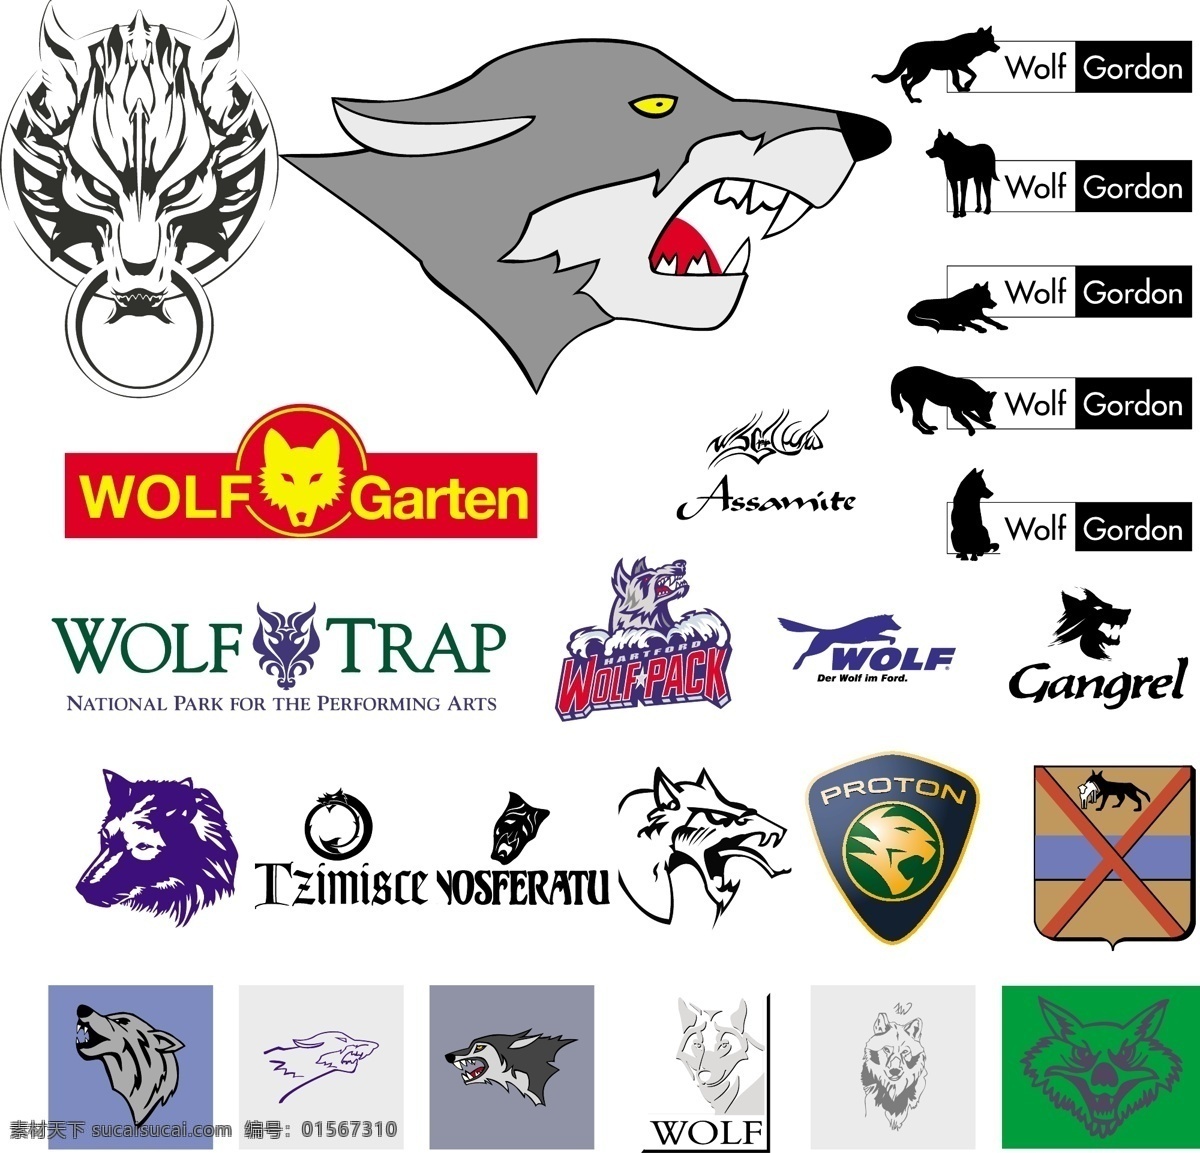 标识标志图标 家禽家畜 生物世界 矢量动物元素 矢量图库 各式各样 矢量 狼 wolf 2010 年 最新 可爱 卡通 十二生肖 动物 人物 元素 系列 总 收藏 合集 标致logo 图形图标 其他矢量图